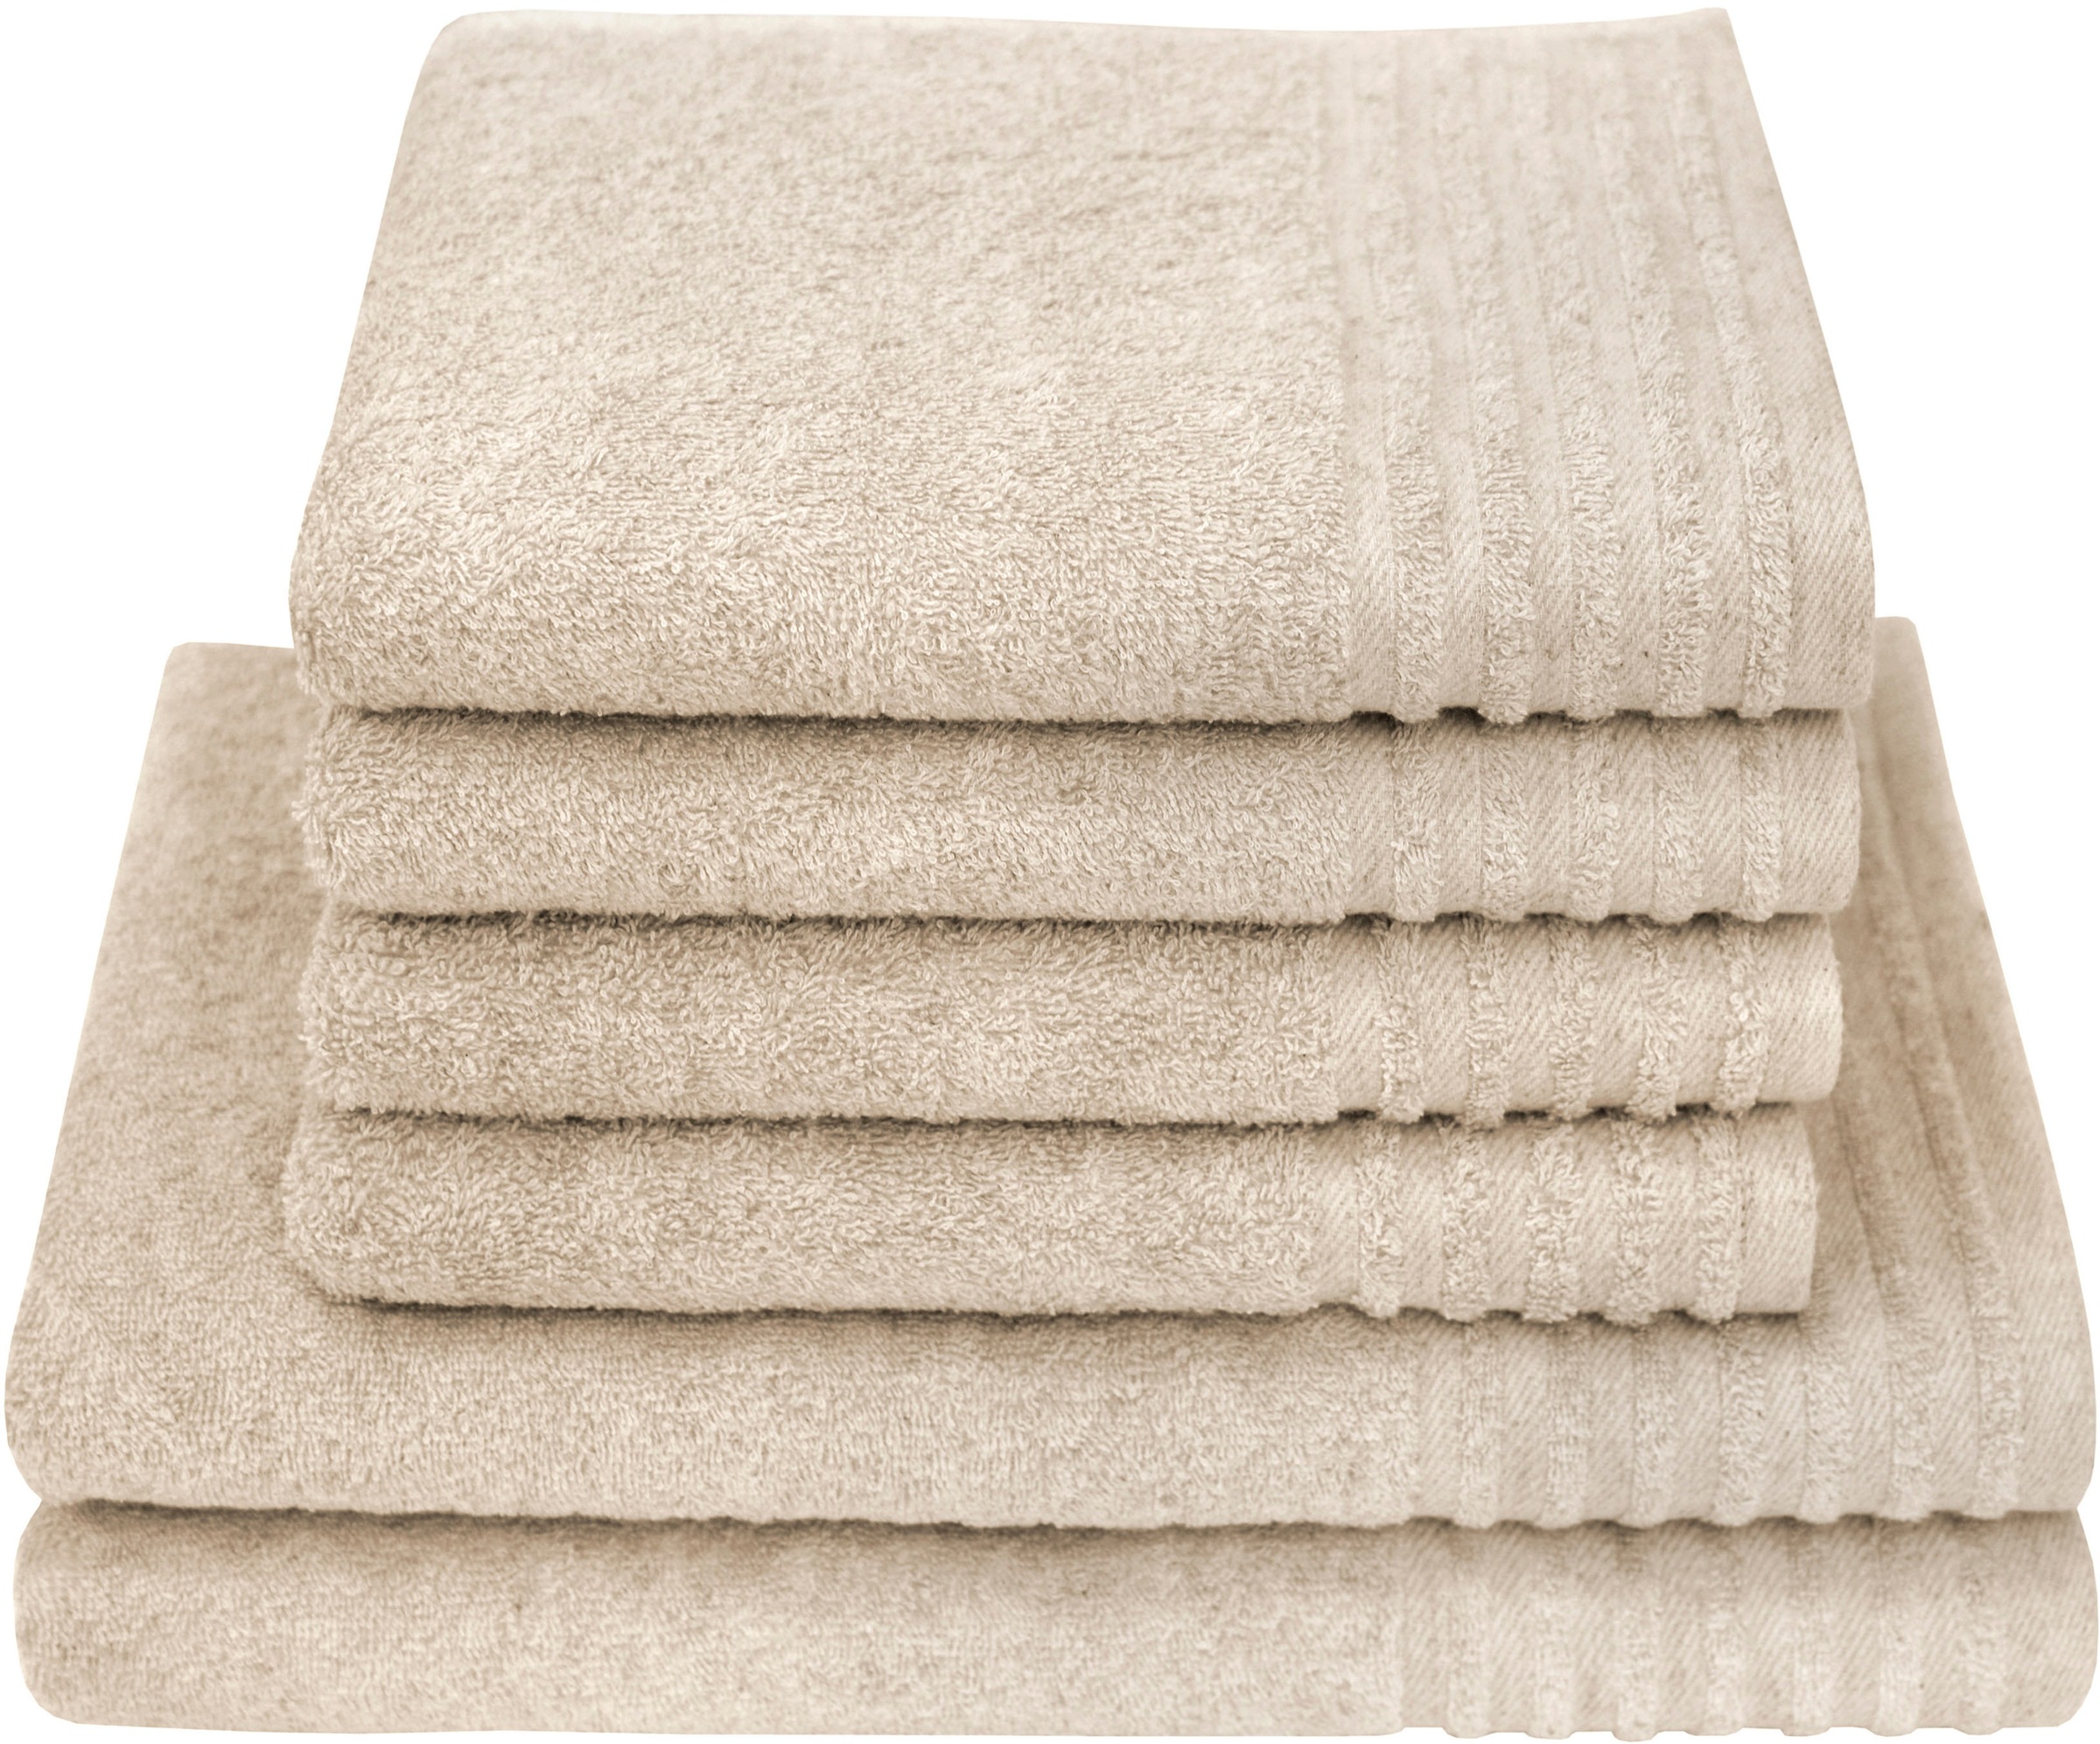 | Handtuchsets aus Baumwolle 24 Moebel Preisvergleich